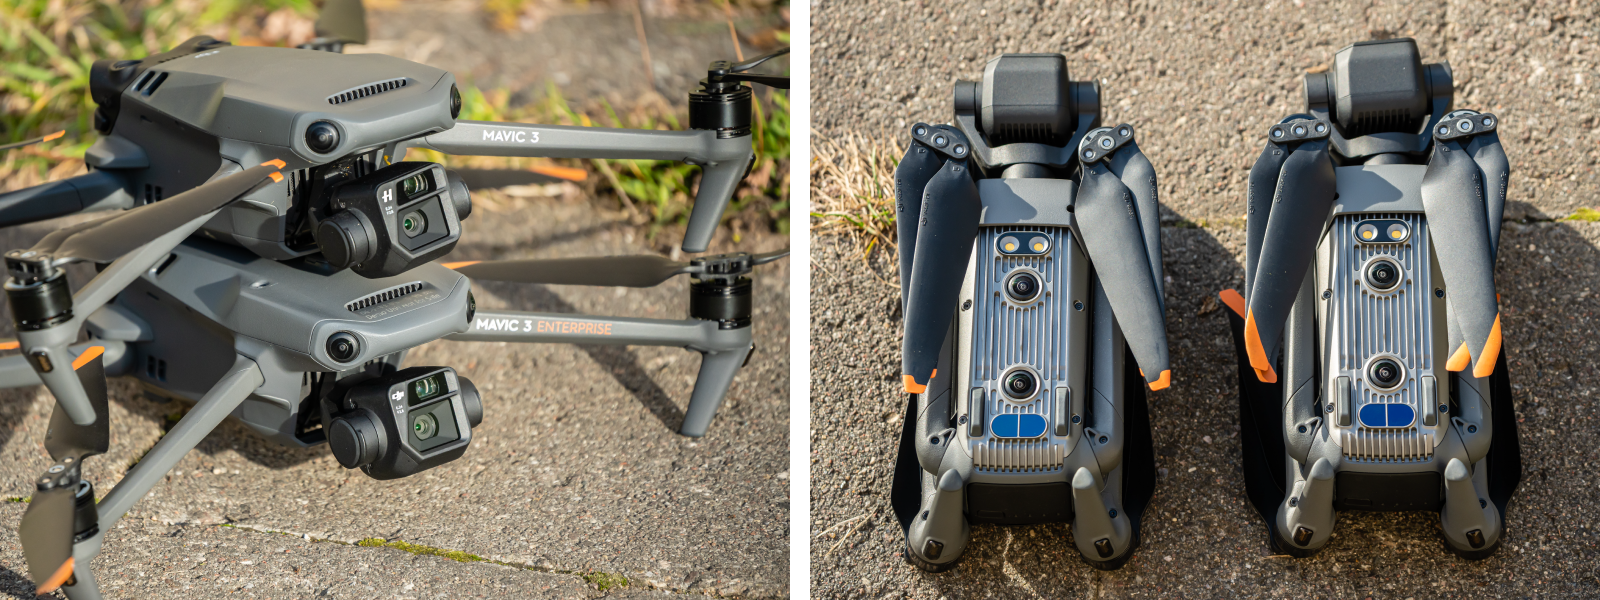 DJI Mavic 3 Pro vs DJI Mavic 3: Which drone is right for you?